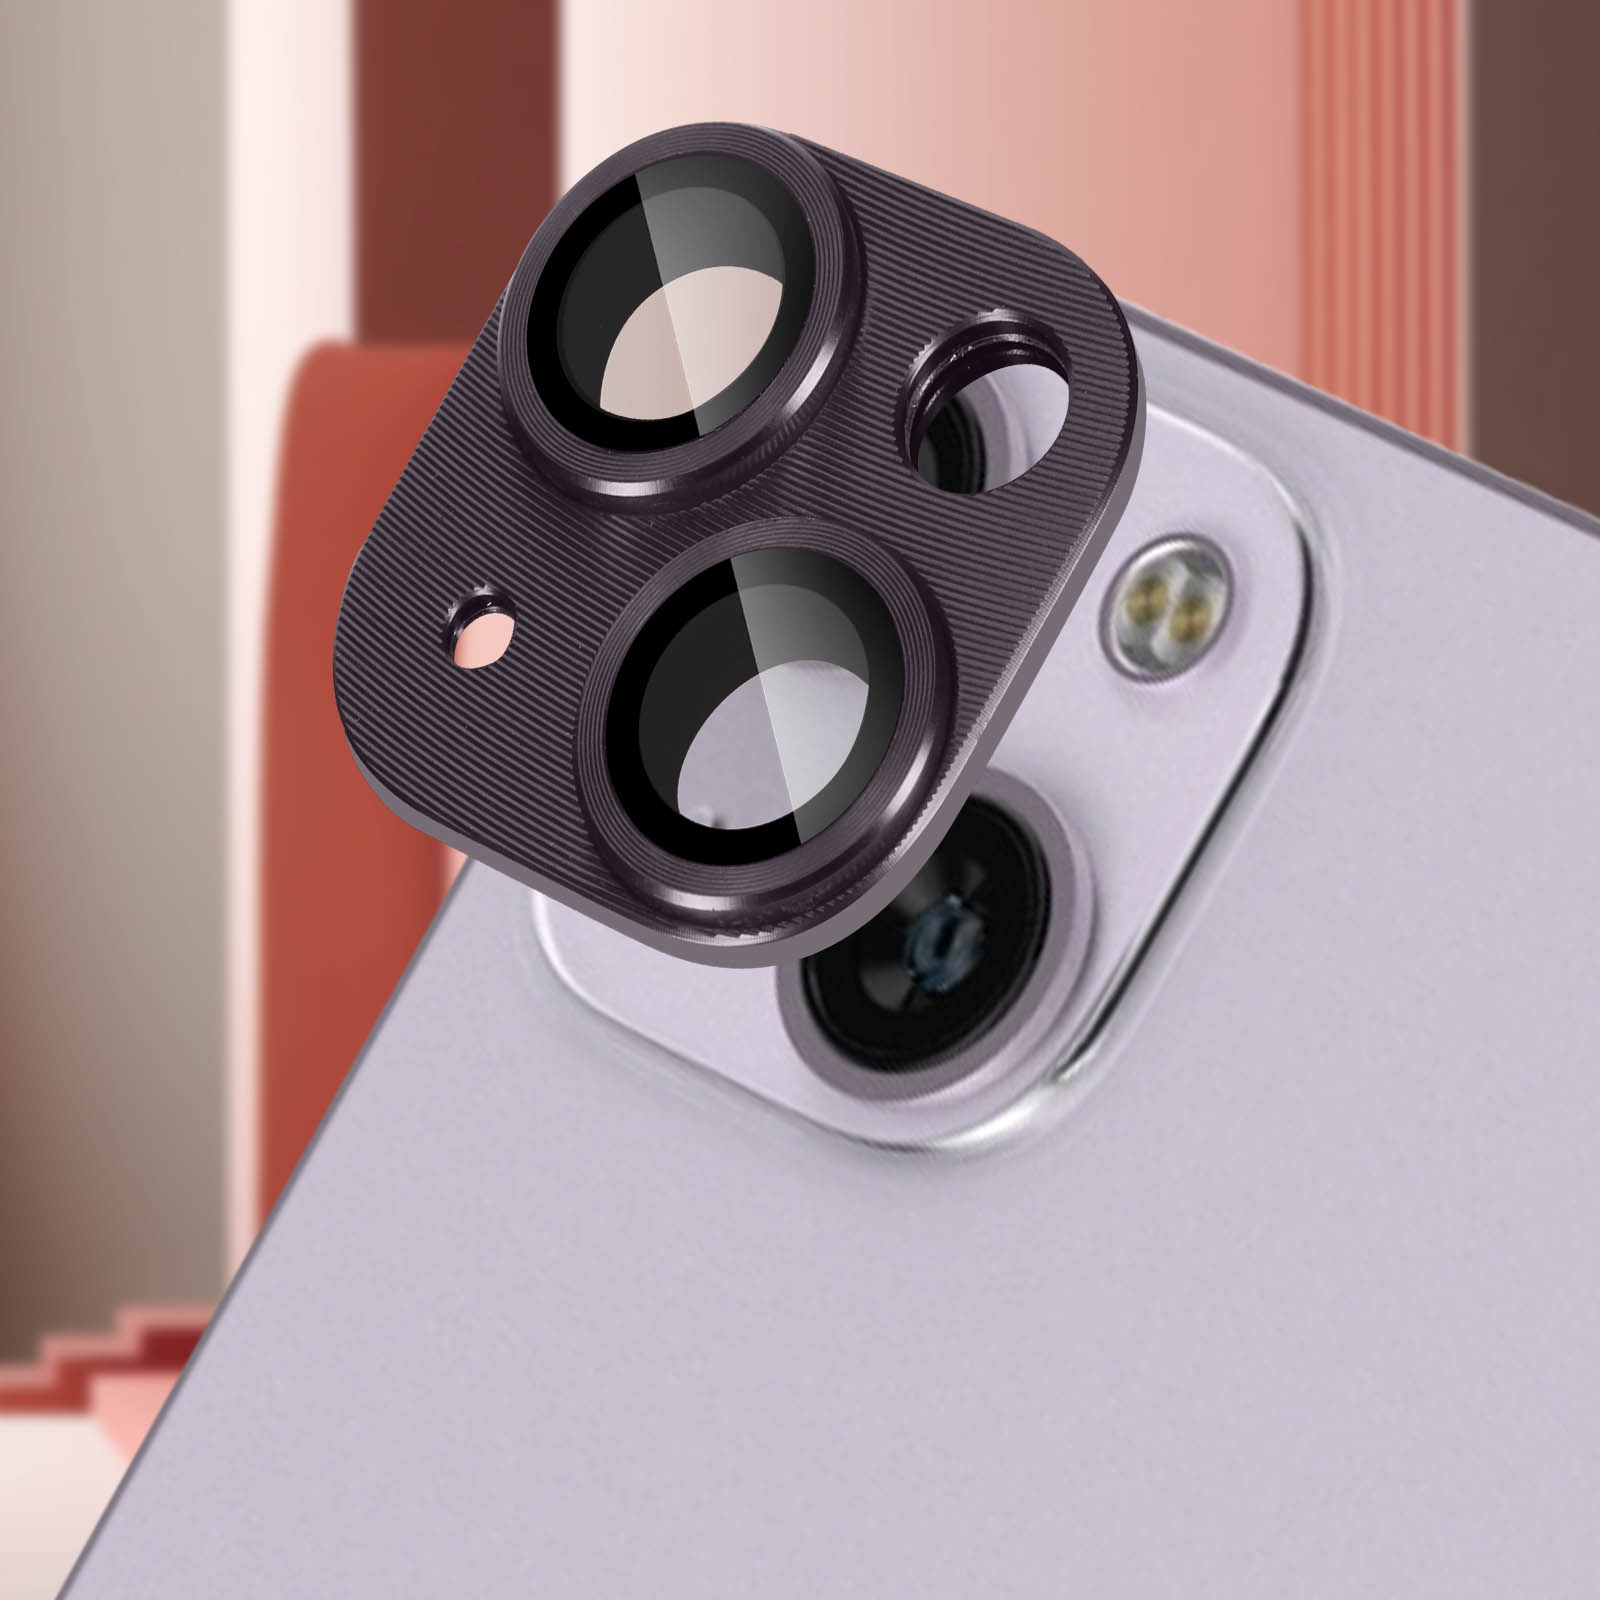 Protection Caméra iPhone 14 Pro et 14 Pro Max en Verre Trempé + Alliage  d'Aluminium, Résistant - Violet